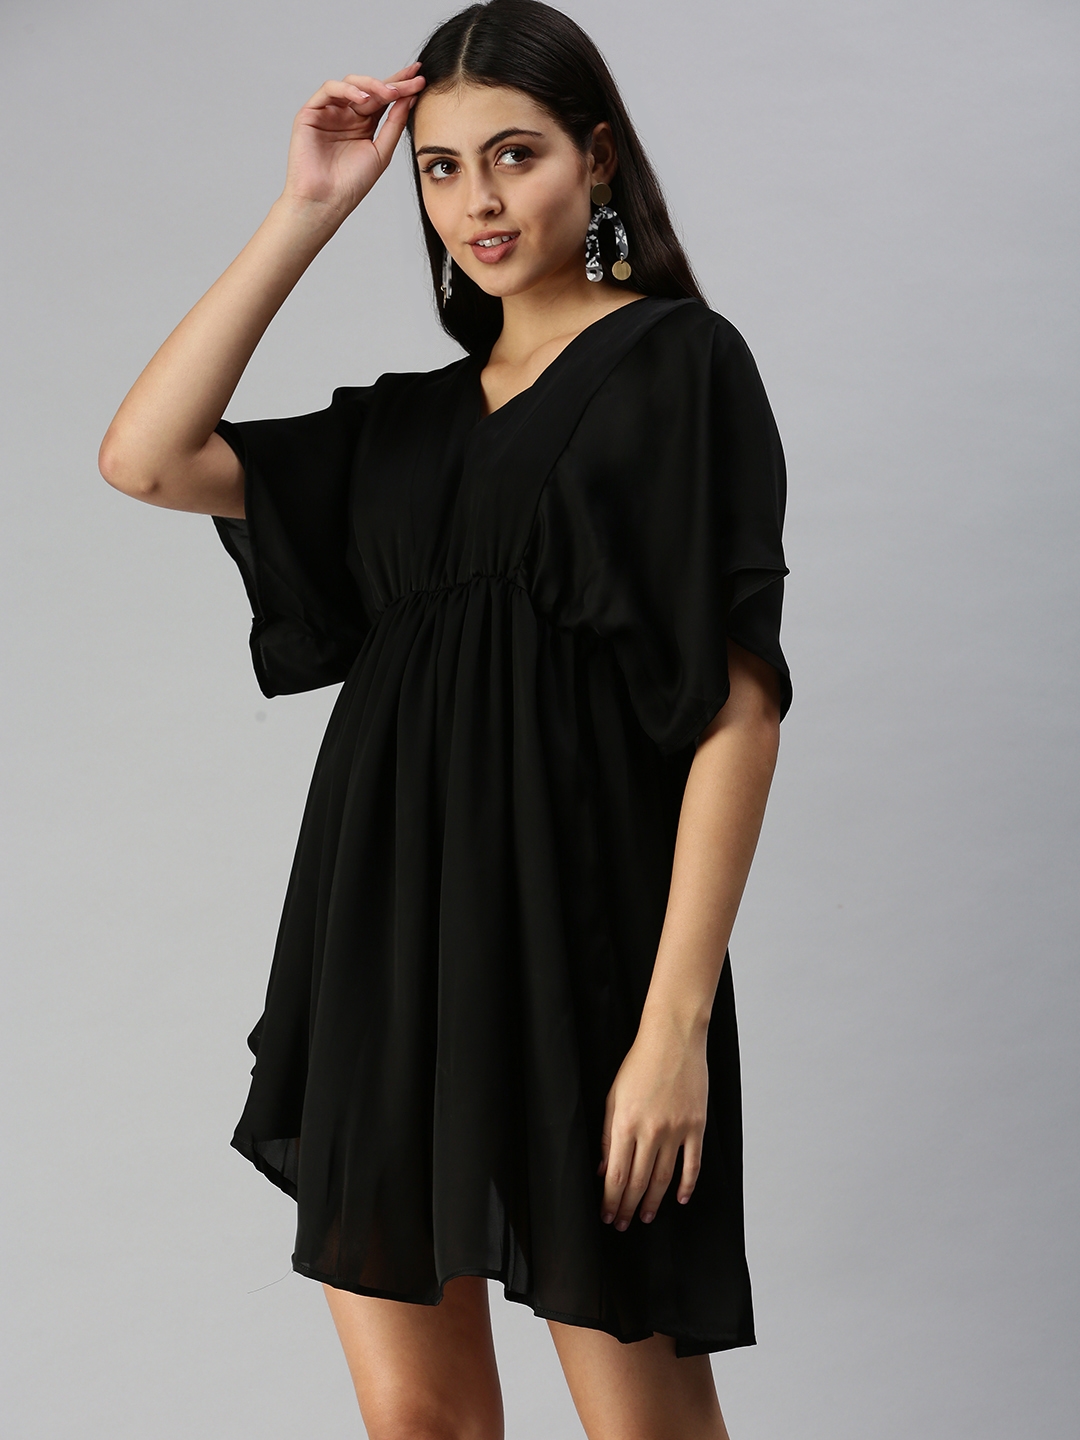 SHOWOFF Women's Black V-Neck Solid A-Line Dress